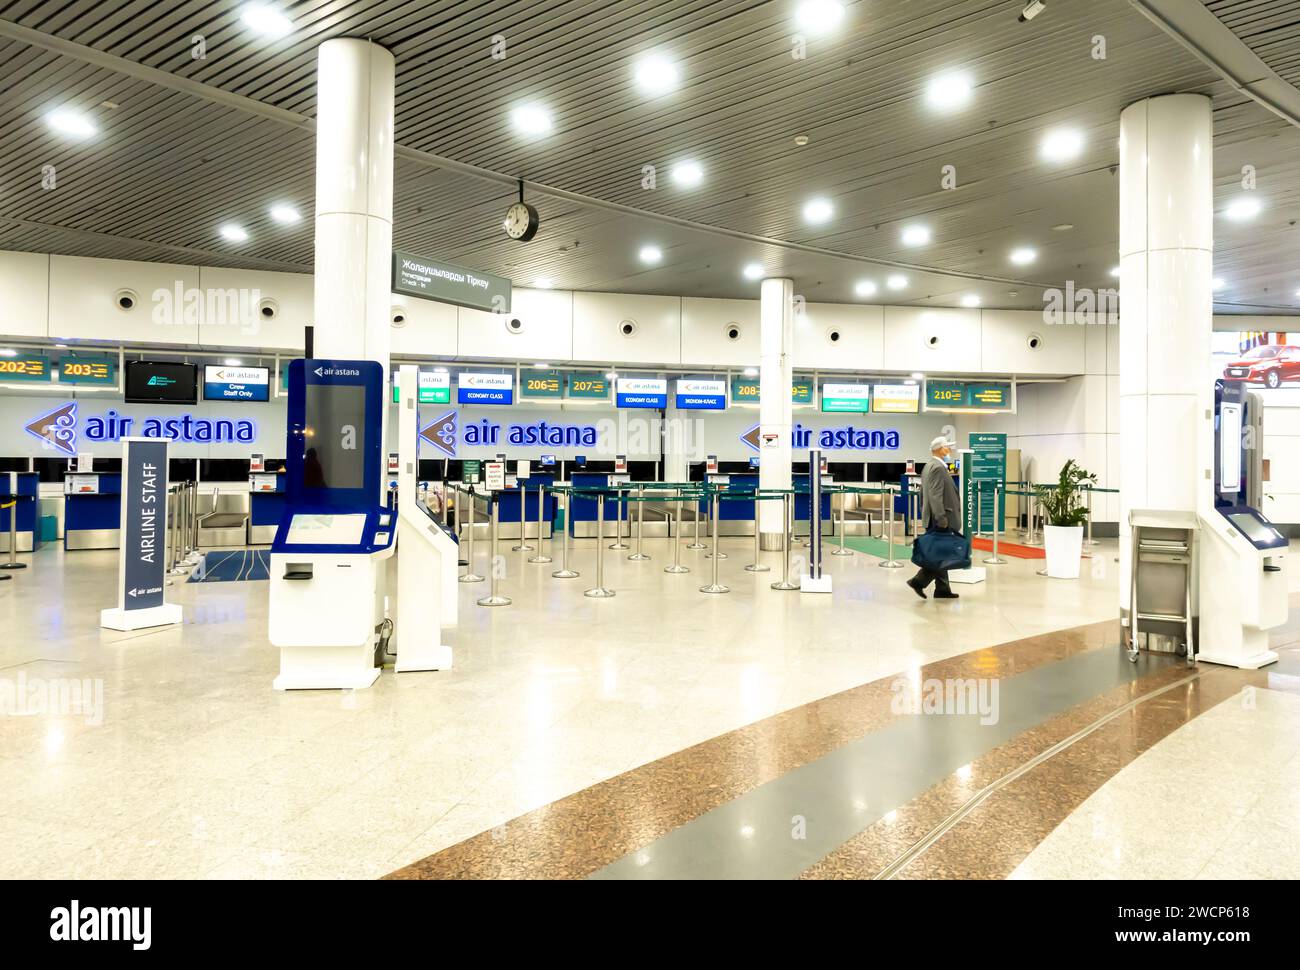 Terminal de départ de l'aéroport d'Astana, zone d'enregistrement. Kazakhstan Banque D'Images